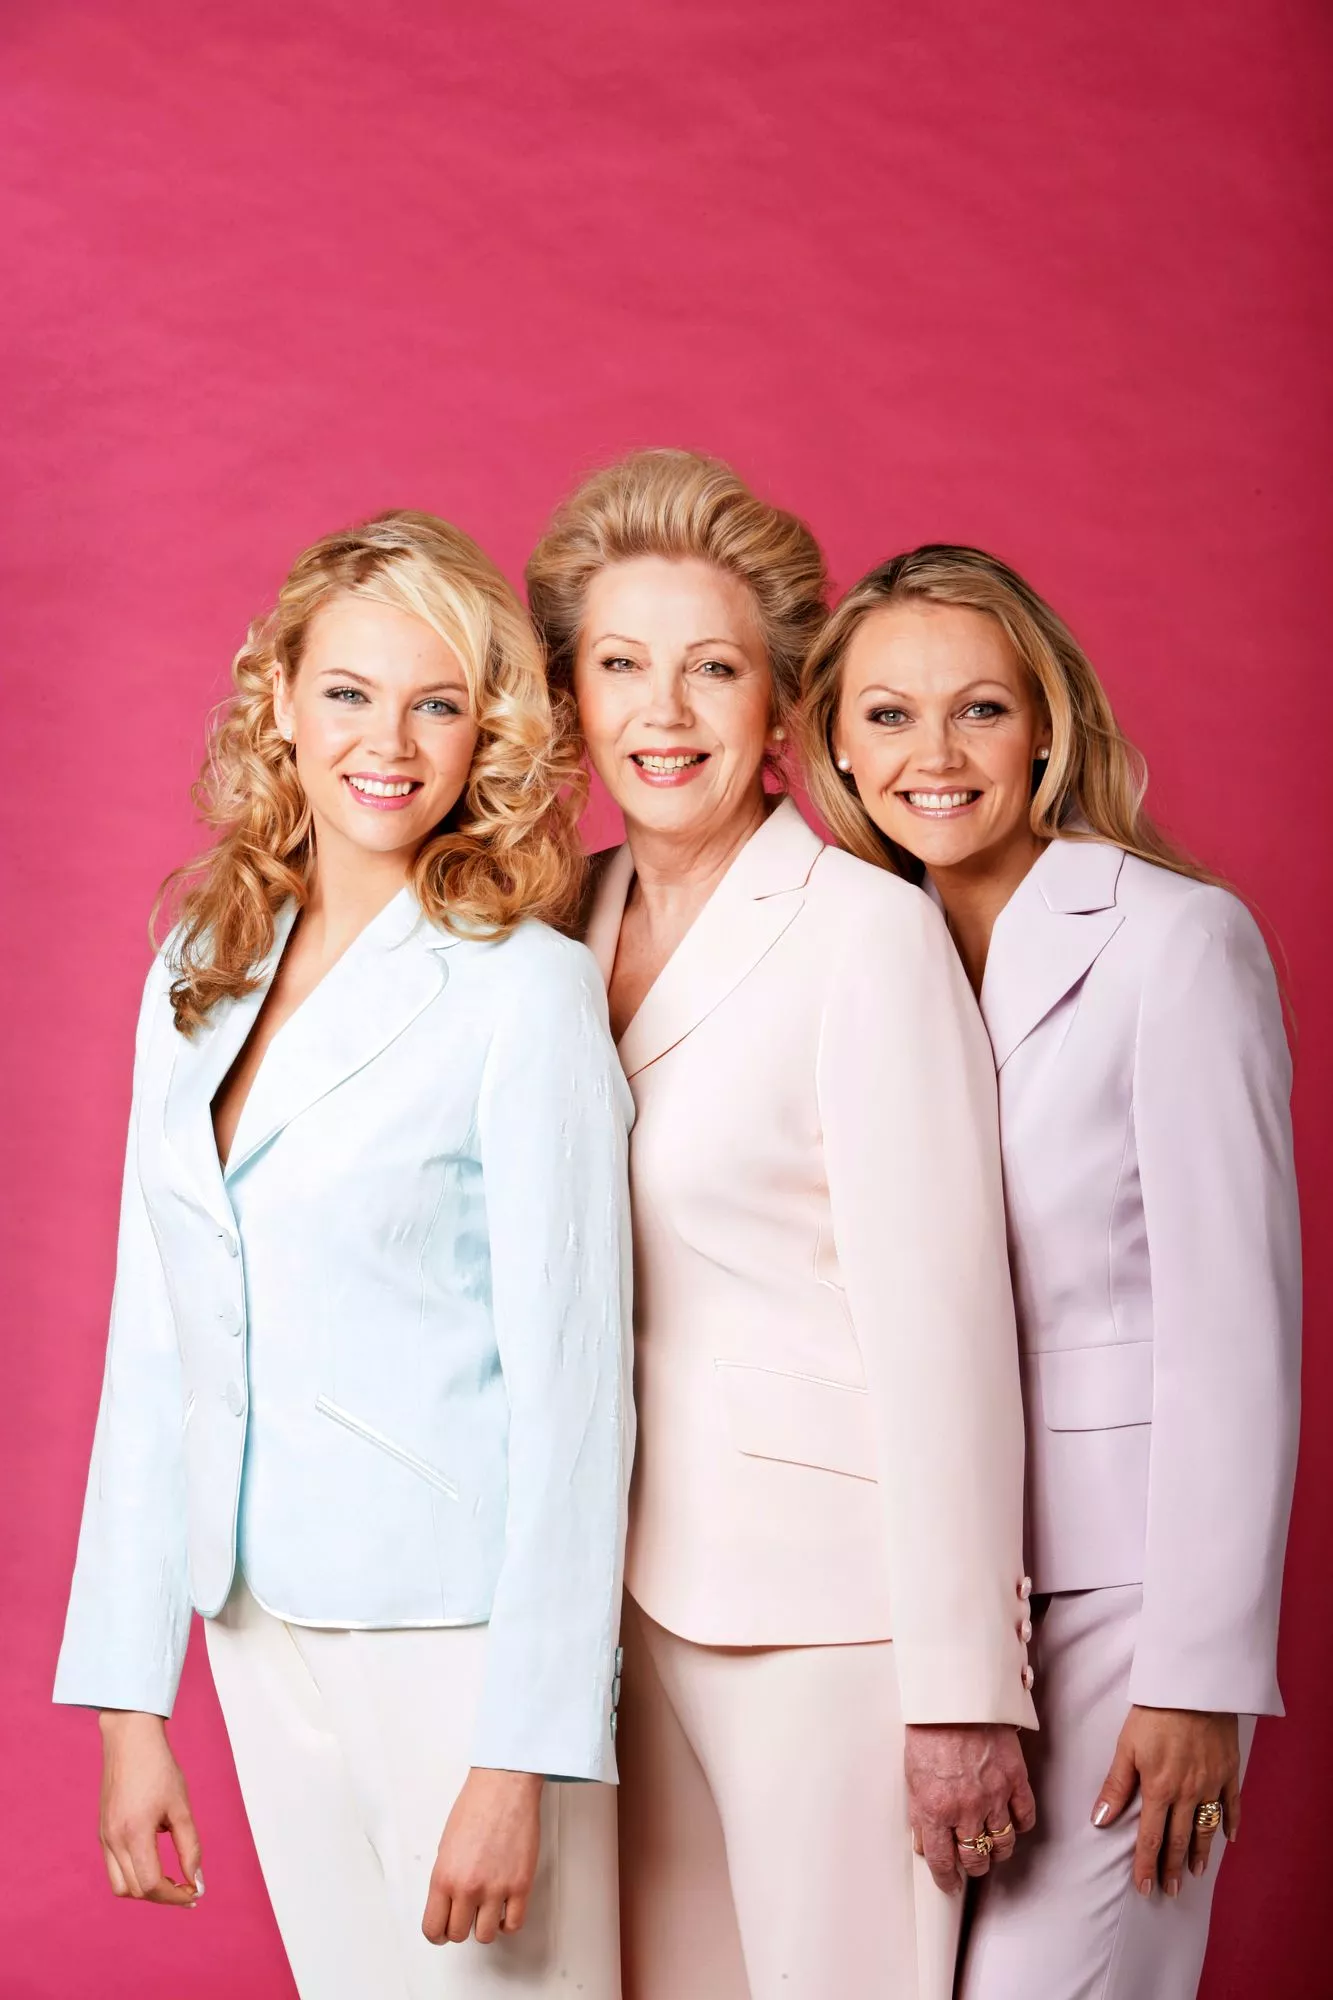 Äiti Kaarina Laine poseerasi tyttäriensä Susannan ja Tiinan kanssa vuonna 2005.